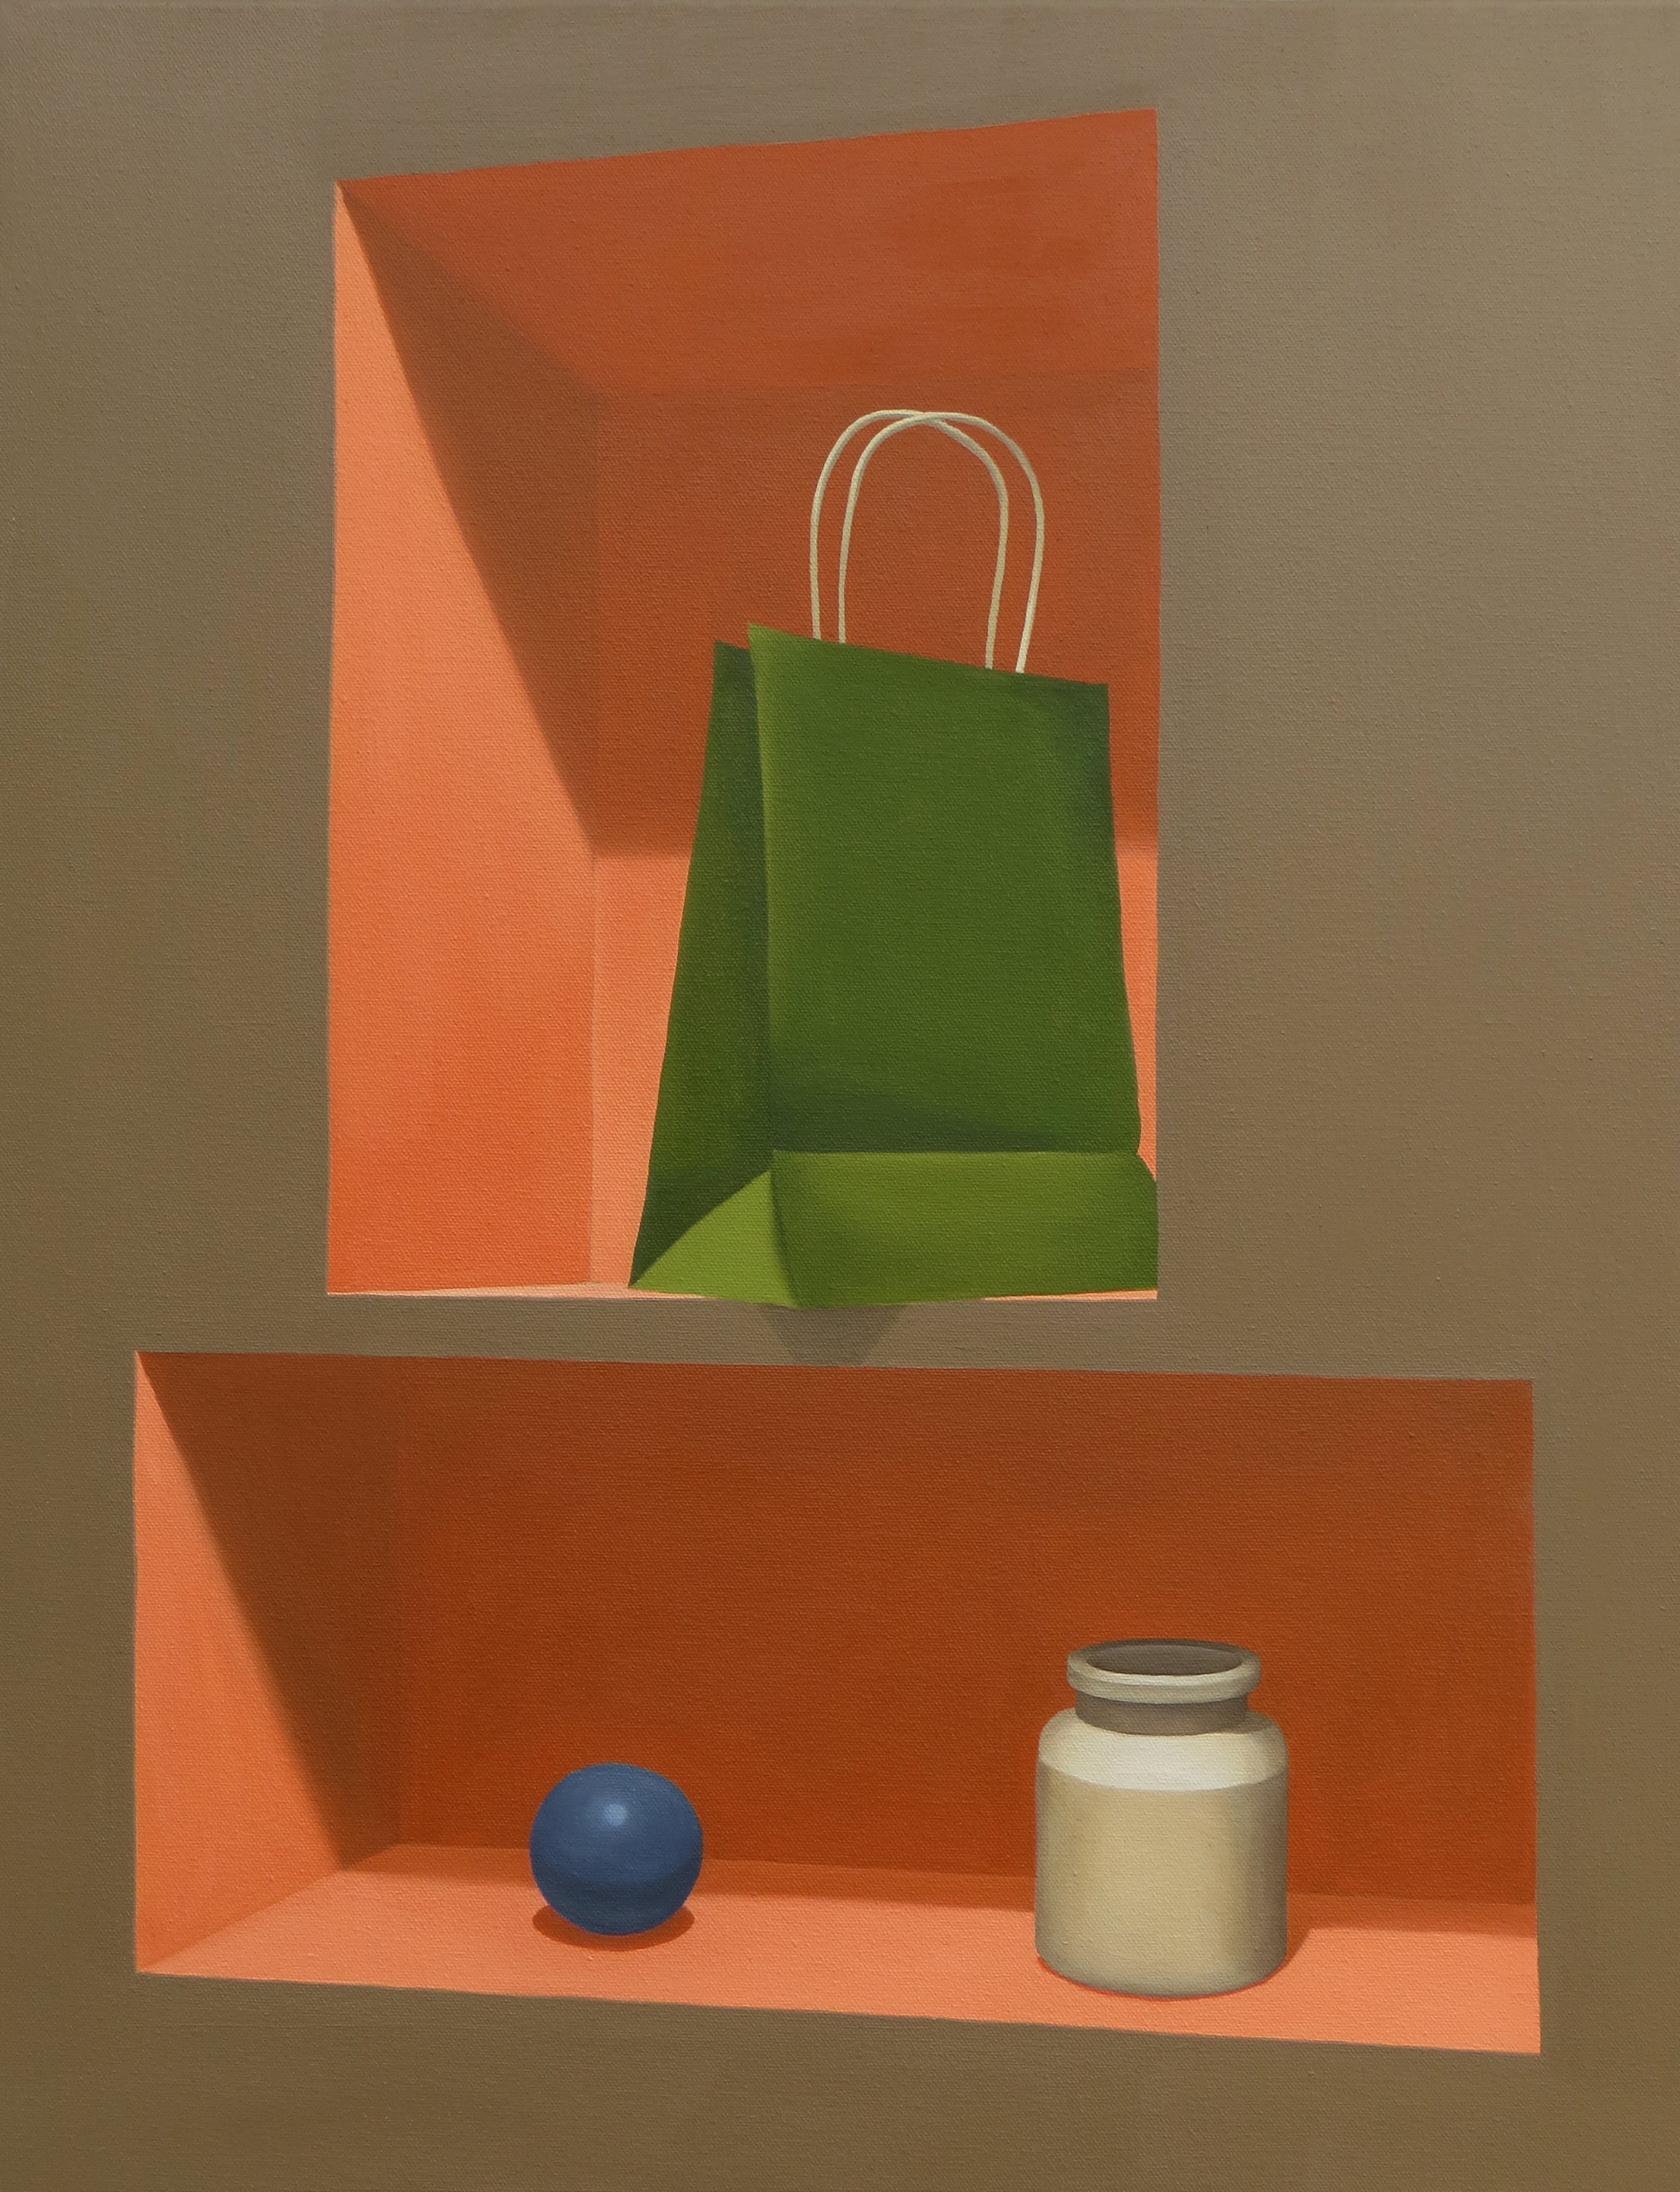 Ball, Jar, and Bag